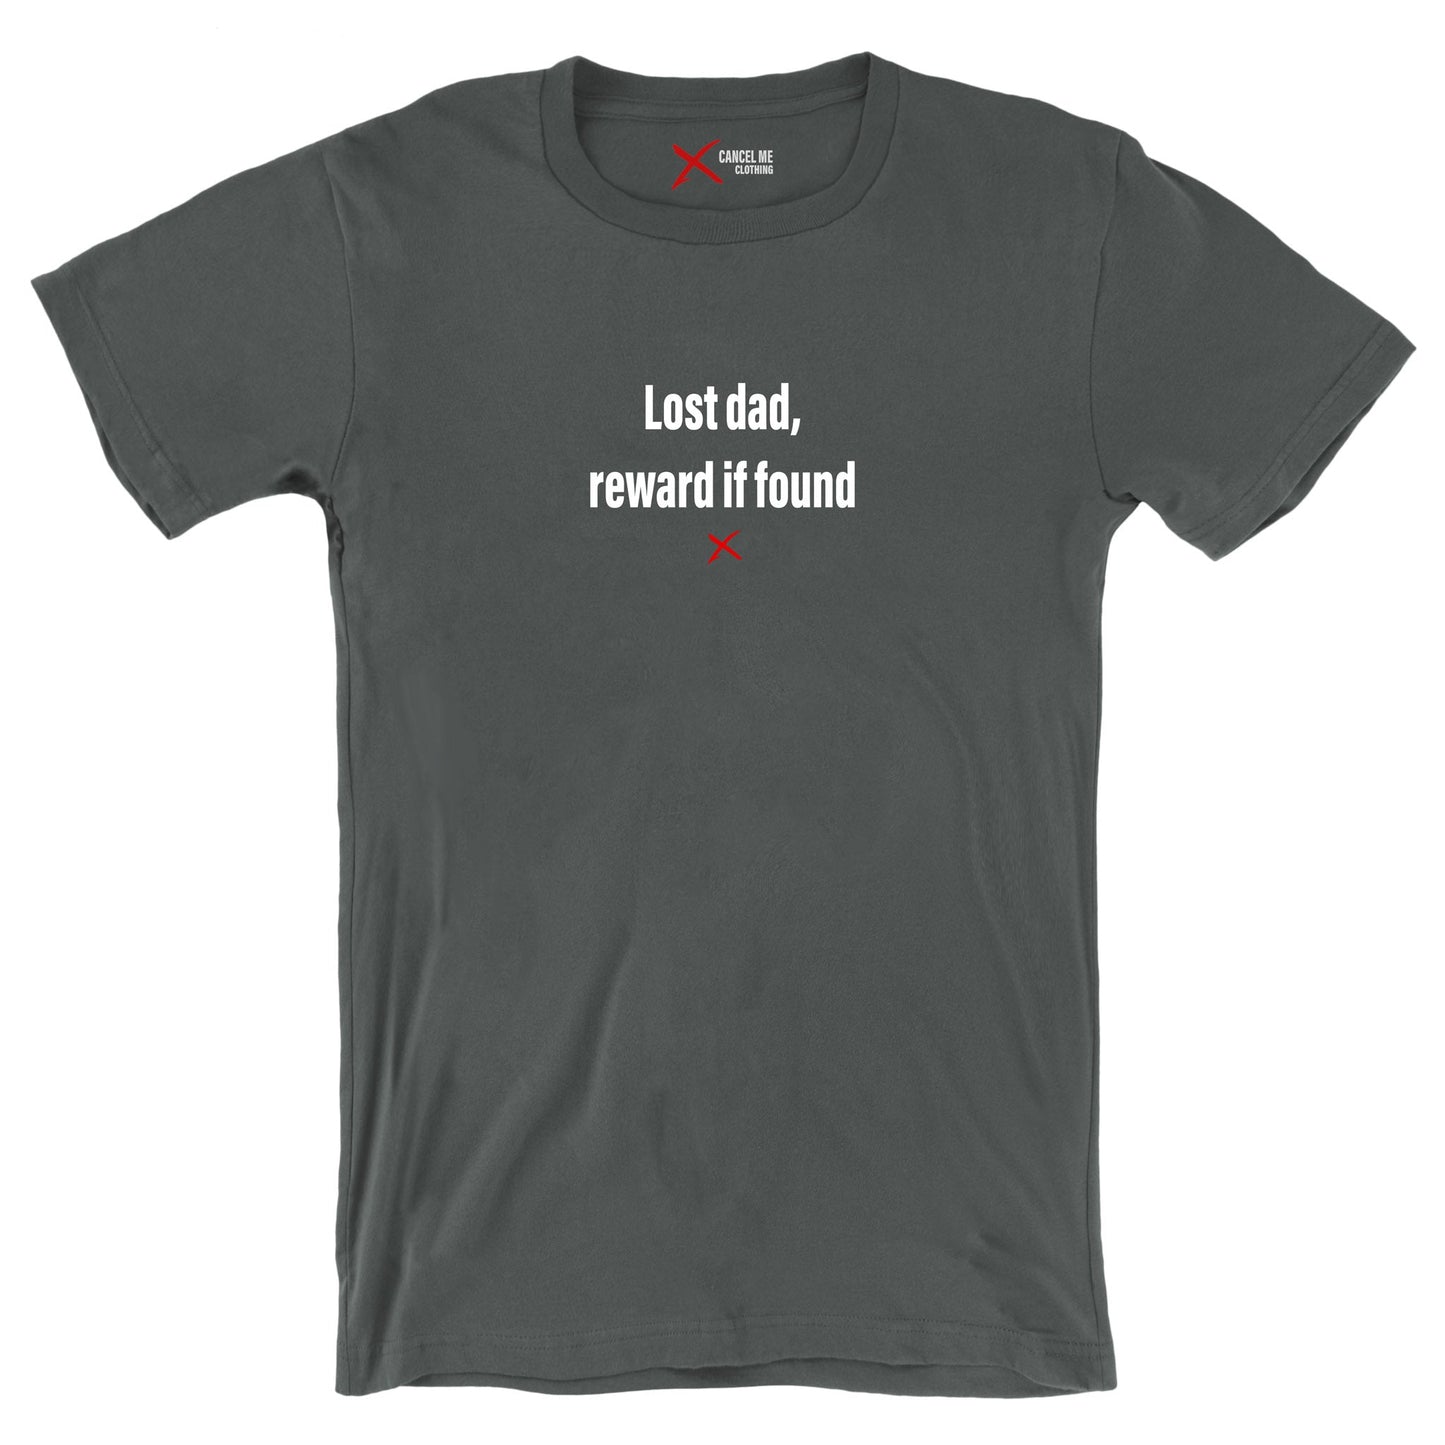 Lost dad, reward if found - Shirt